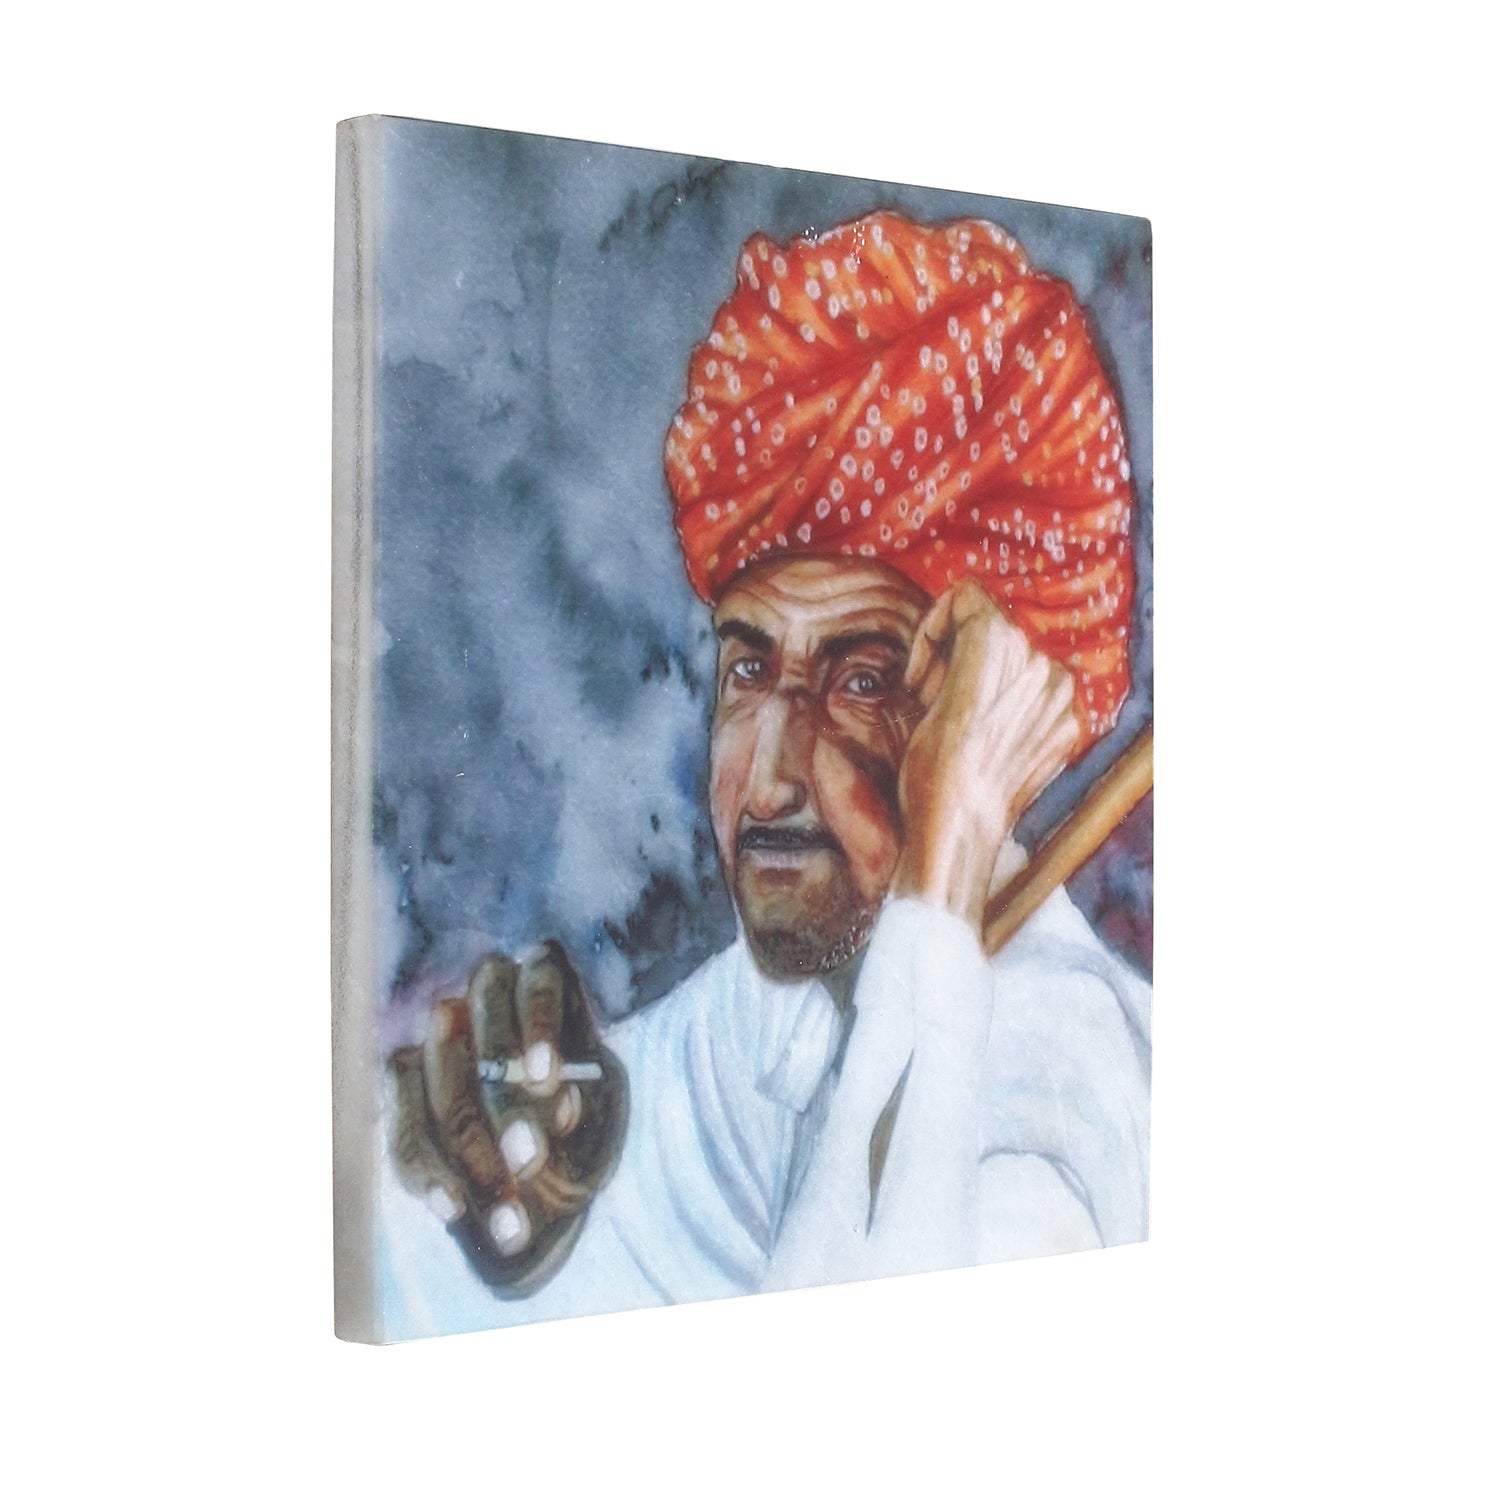 Rajasthani Man Wearing Turban Painting On Marble Square Tile 4